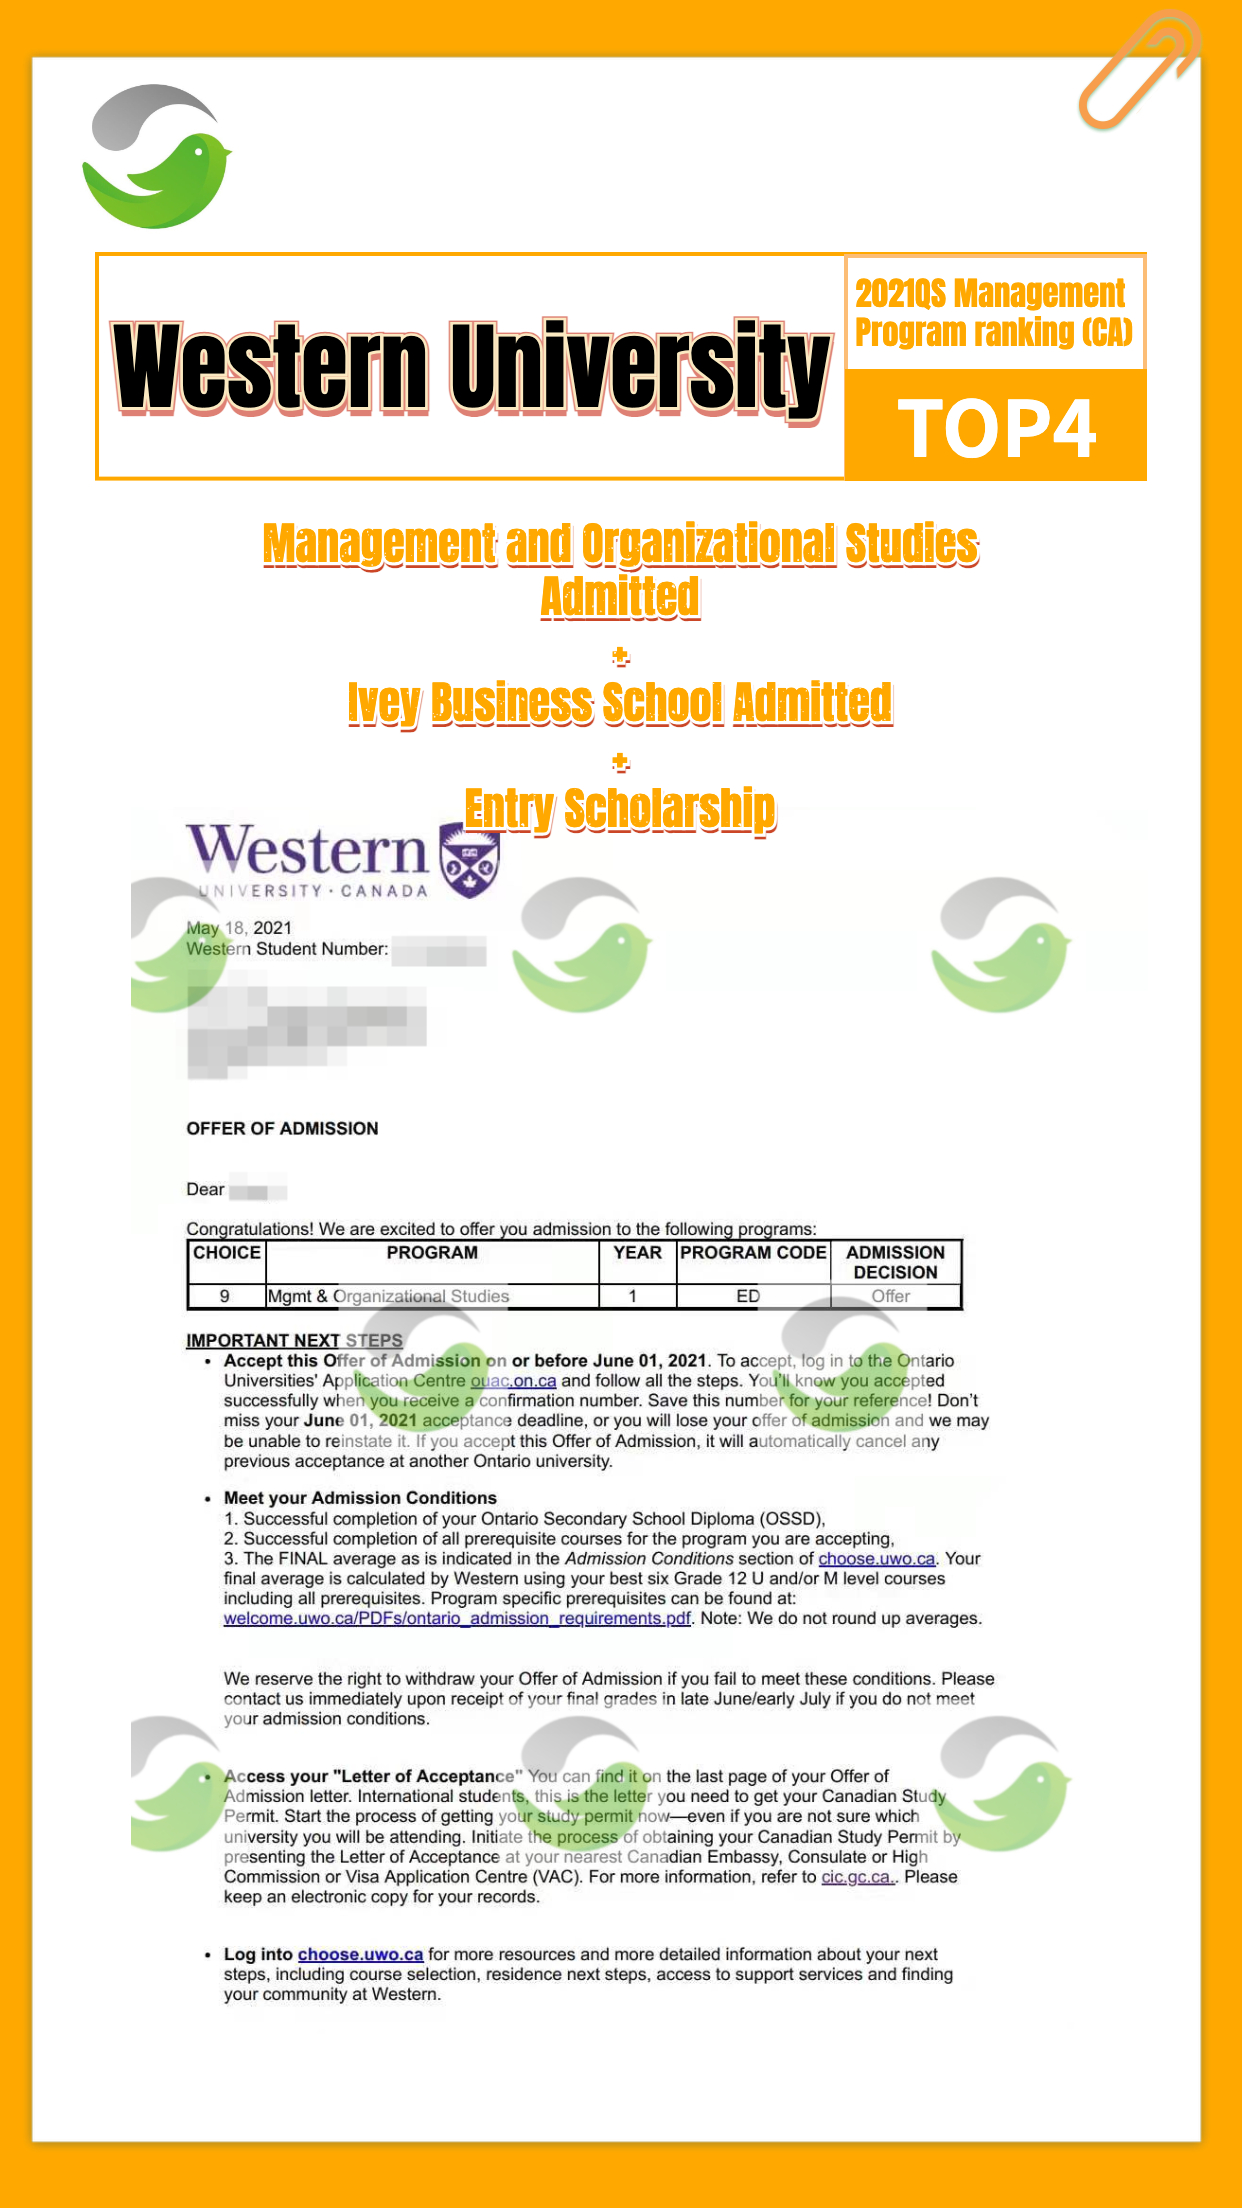 5-英文_western management_offer海报